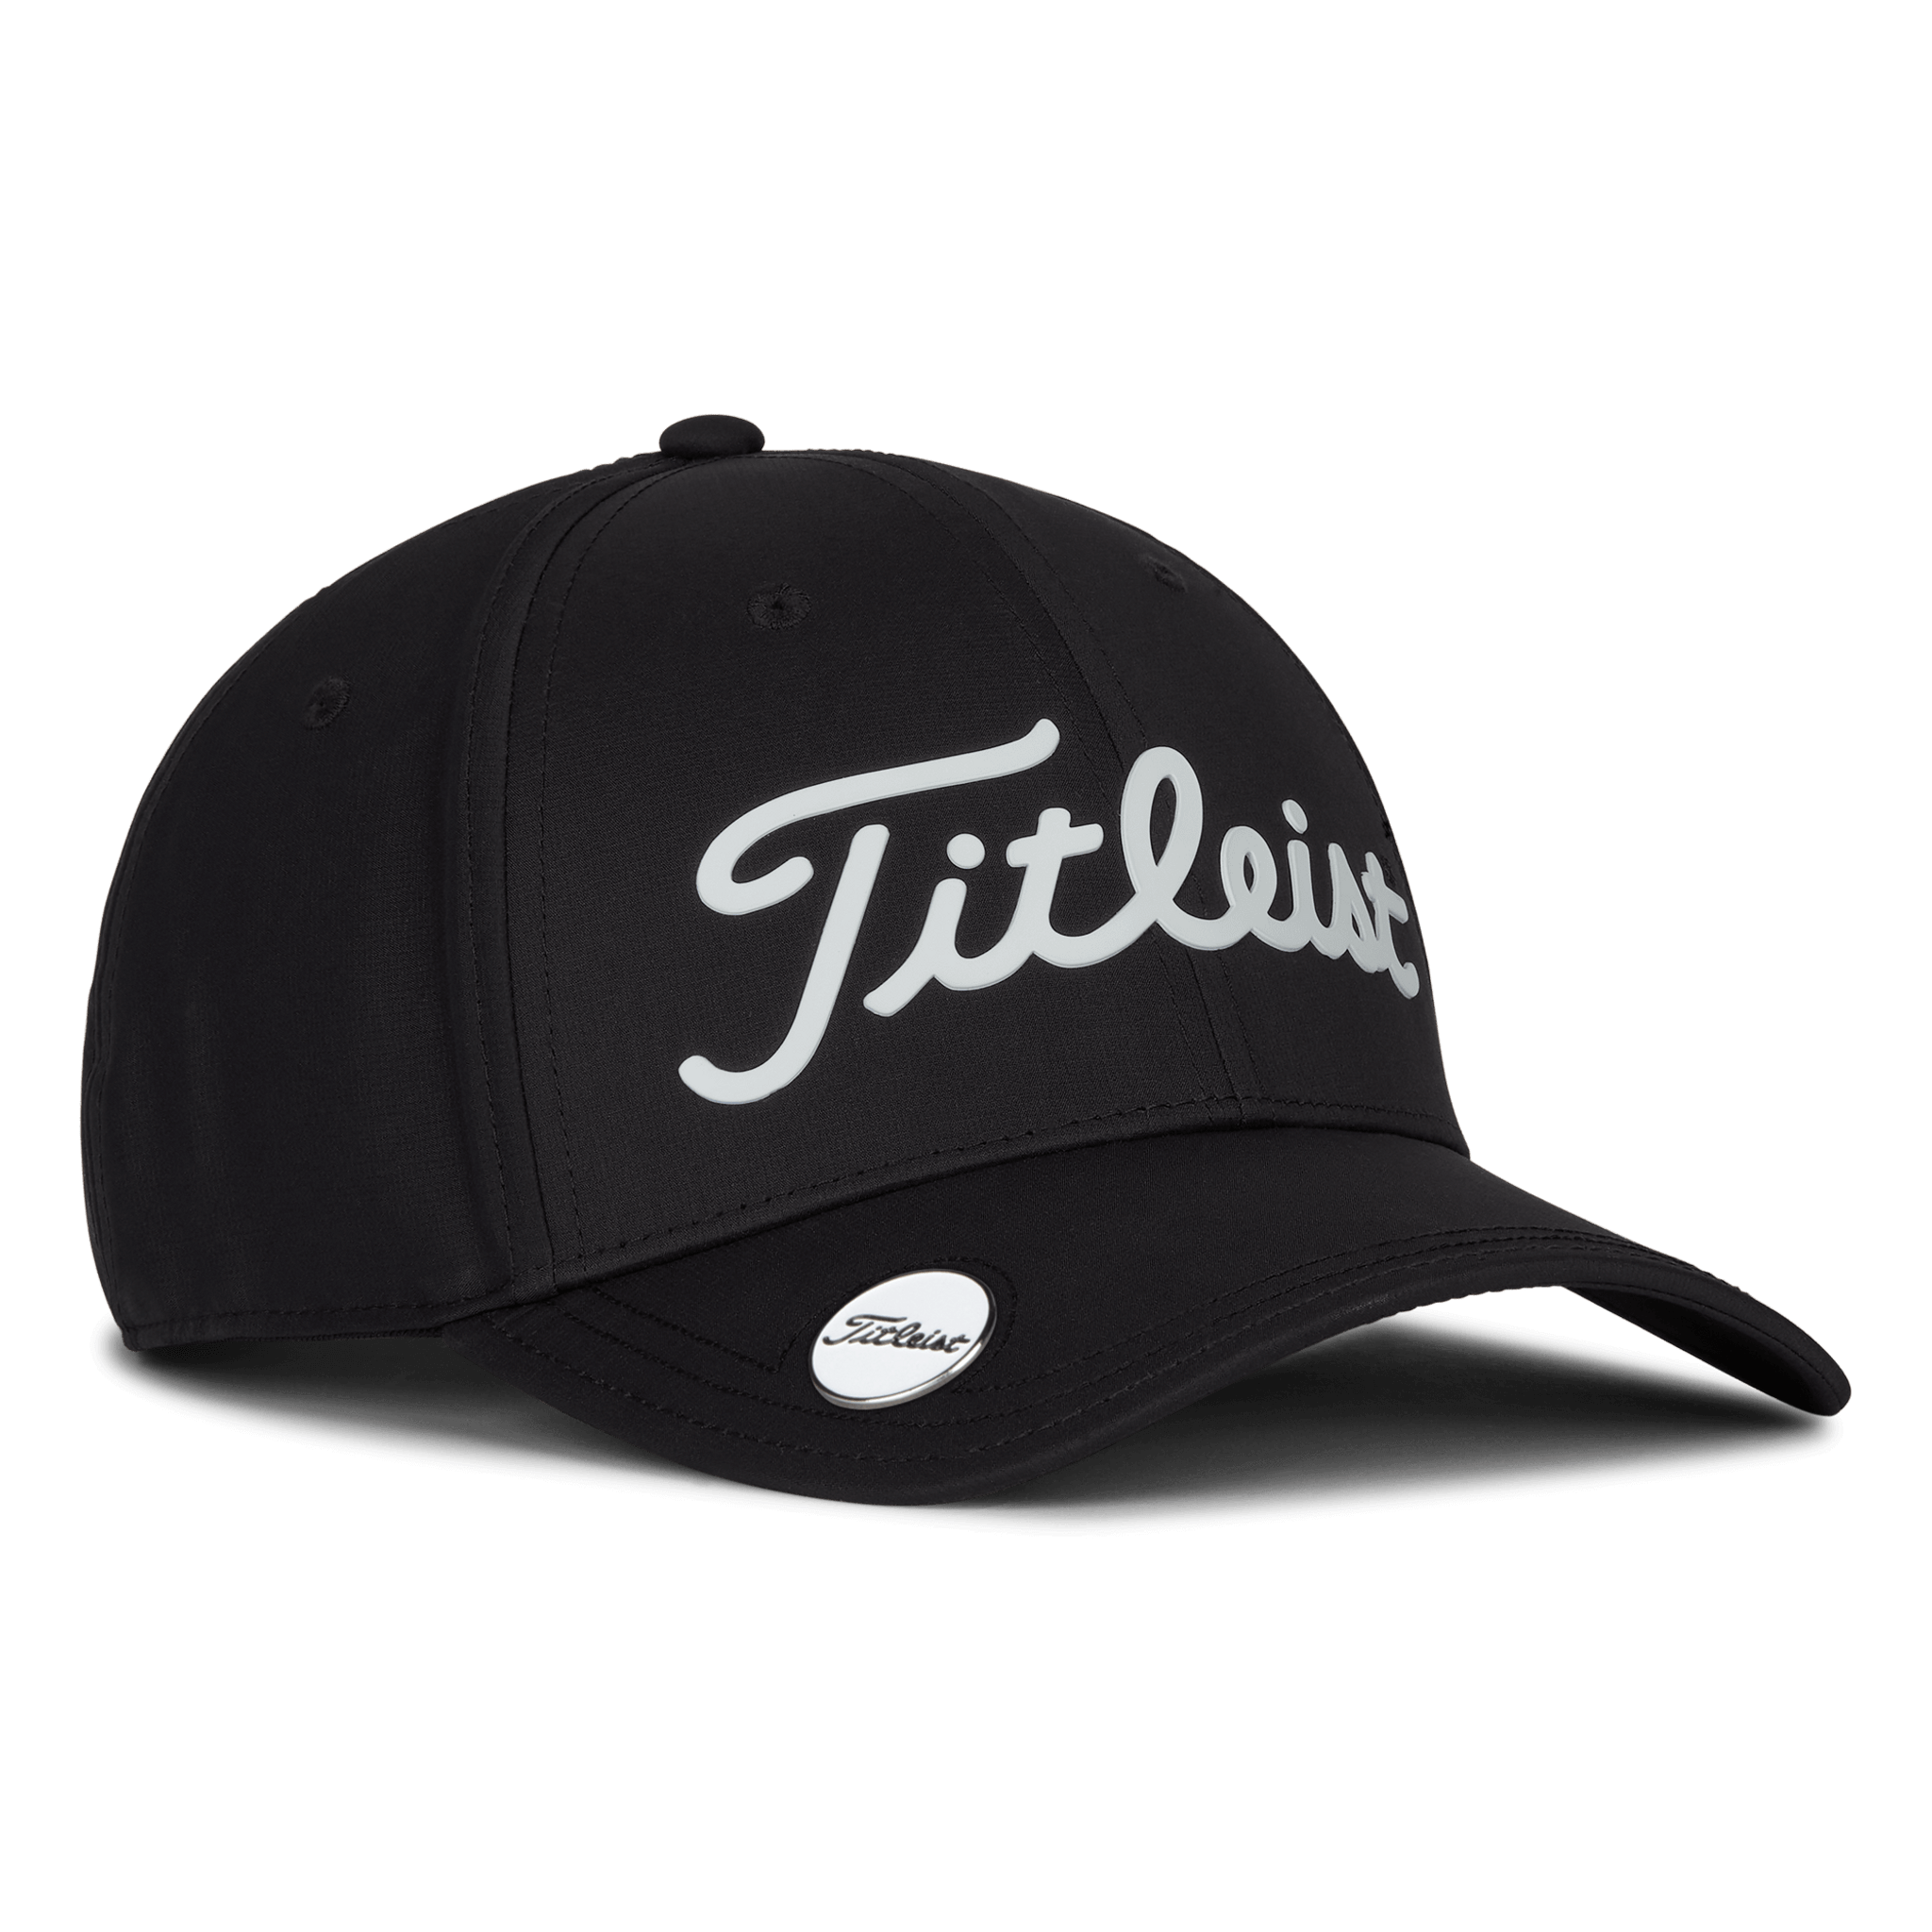 Titleist Players Performance Ball Marker Adjustable Golf Cap